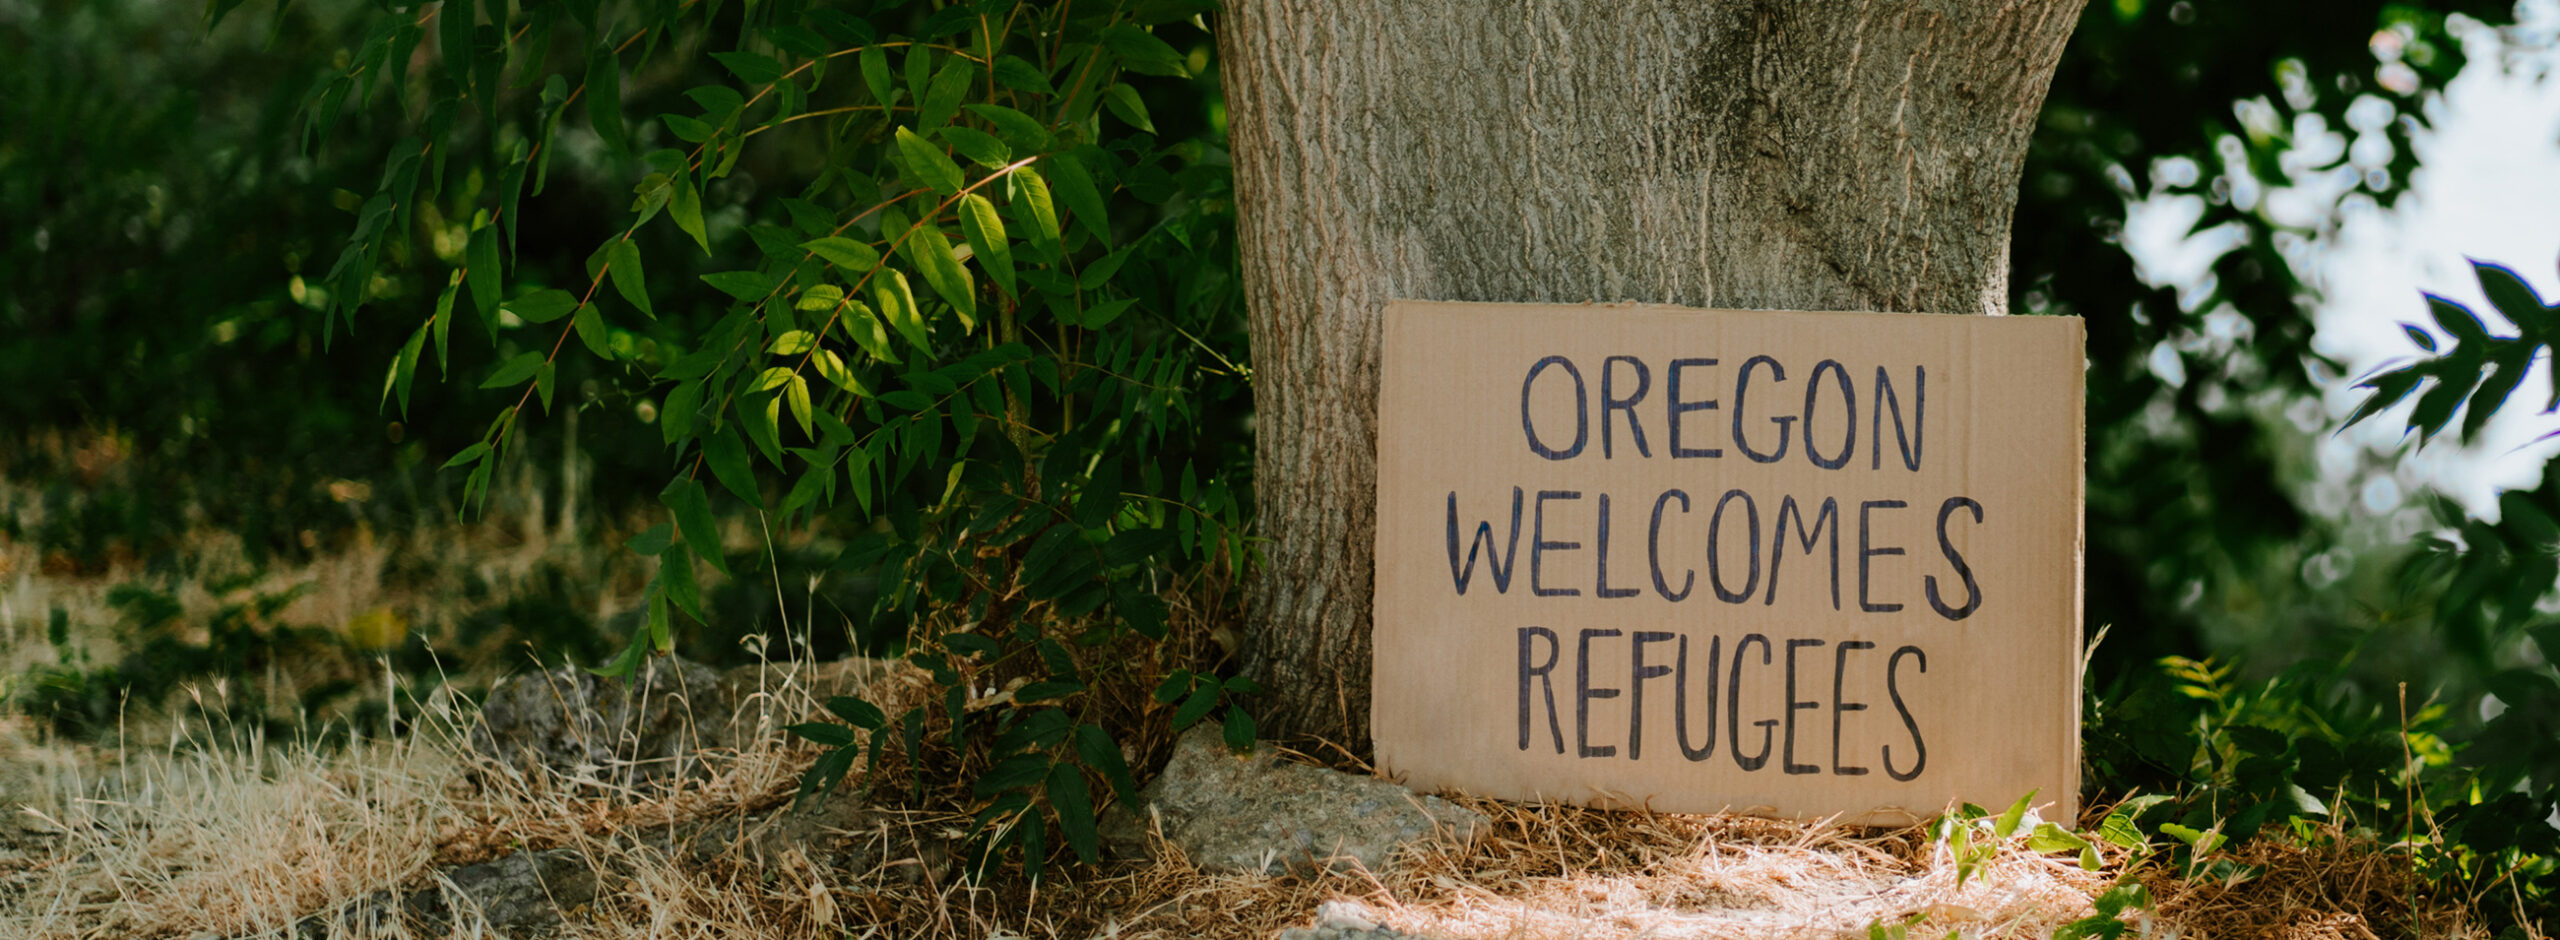 Oregon Welcomes Refugees